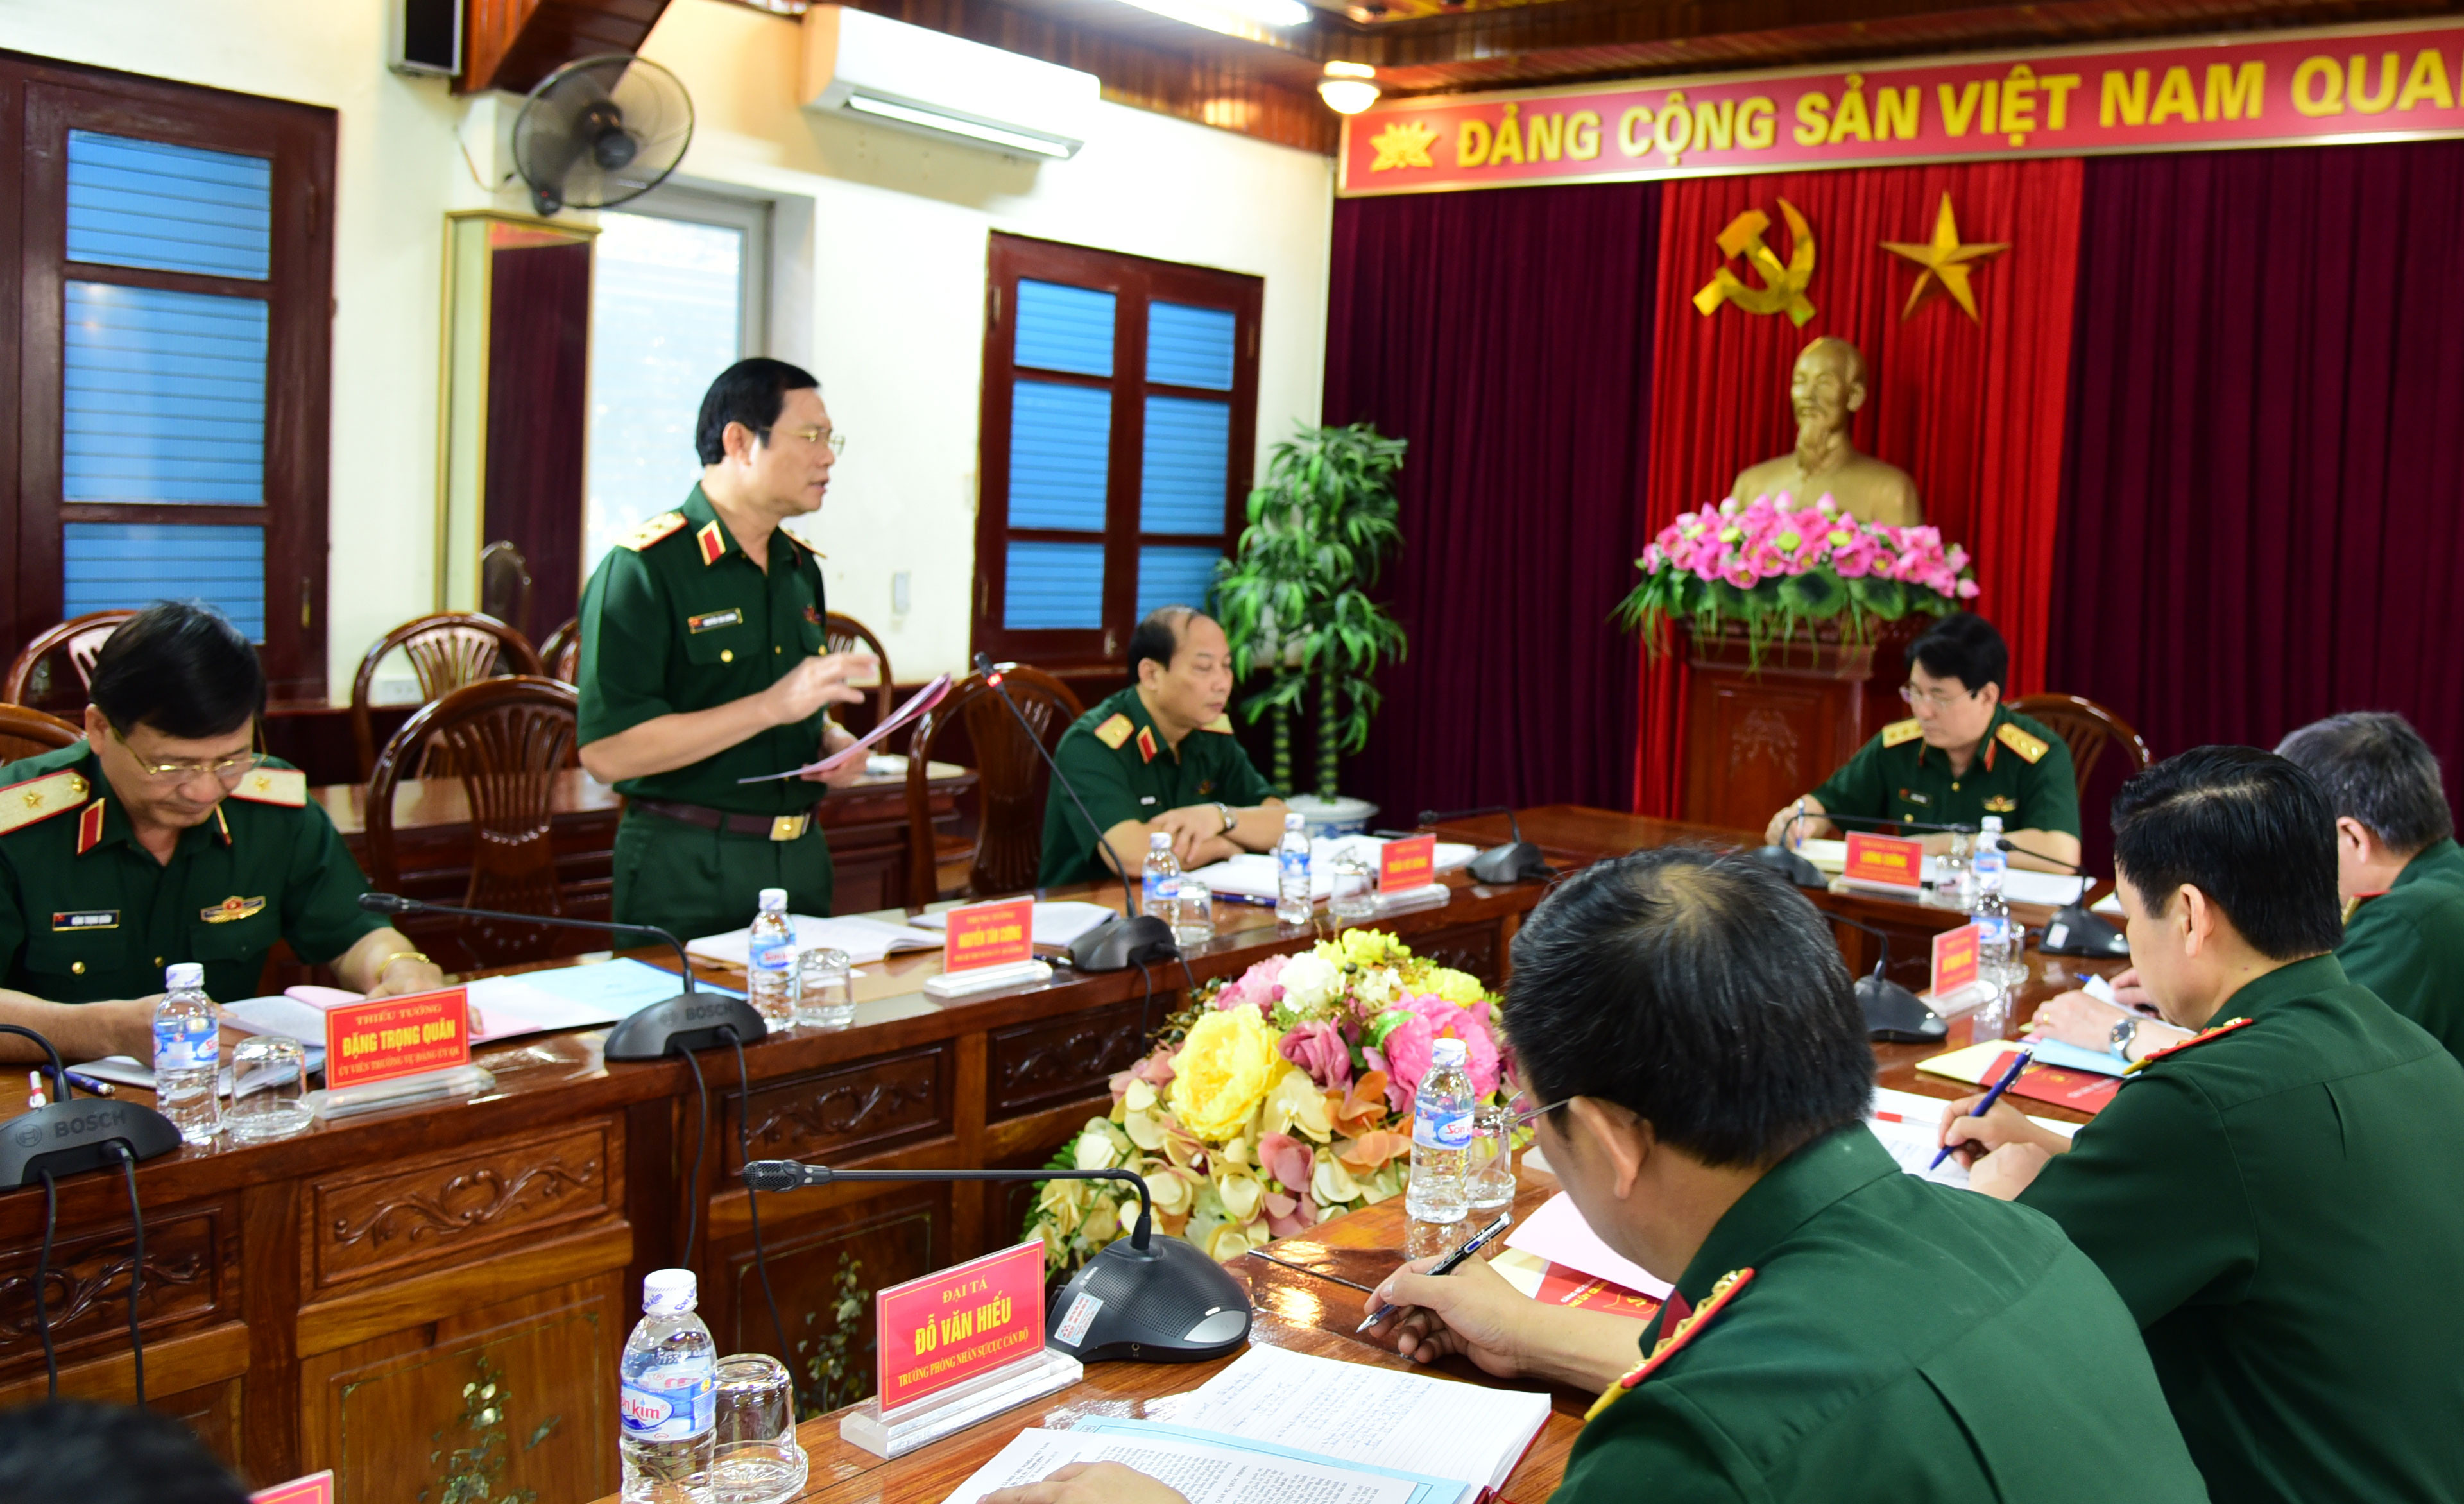 Trung tướng Nguyễn Tân Cương - Tư lệnh Quân khu 4 báo cáo với đoàn công tác tình hình thực hiện nhiệm vụ 6 tháng đầu năm 2018. Ảnh: Nguyễn Đức Cương